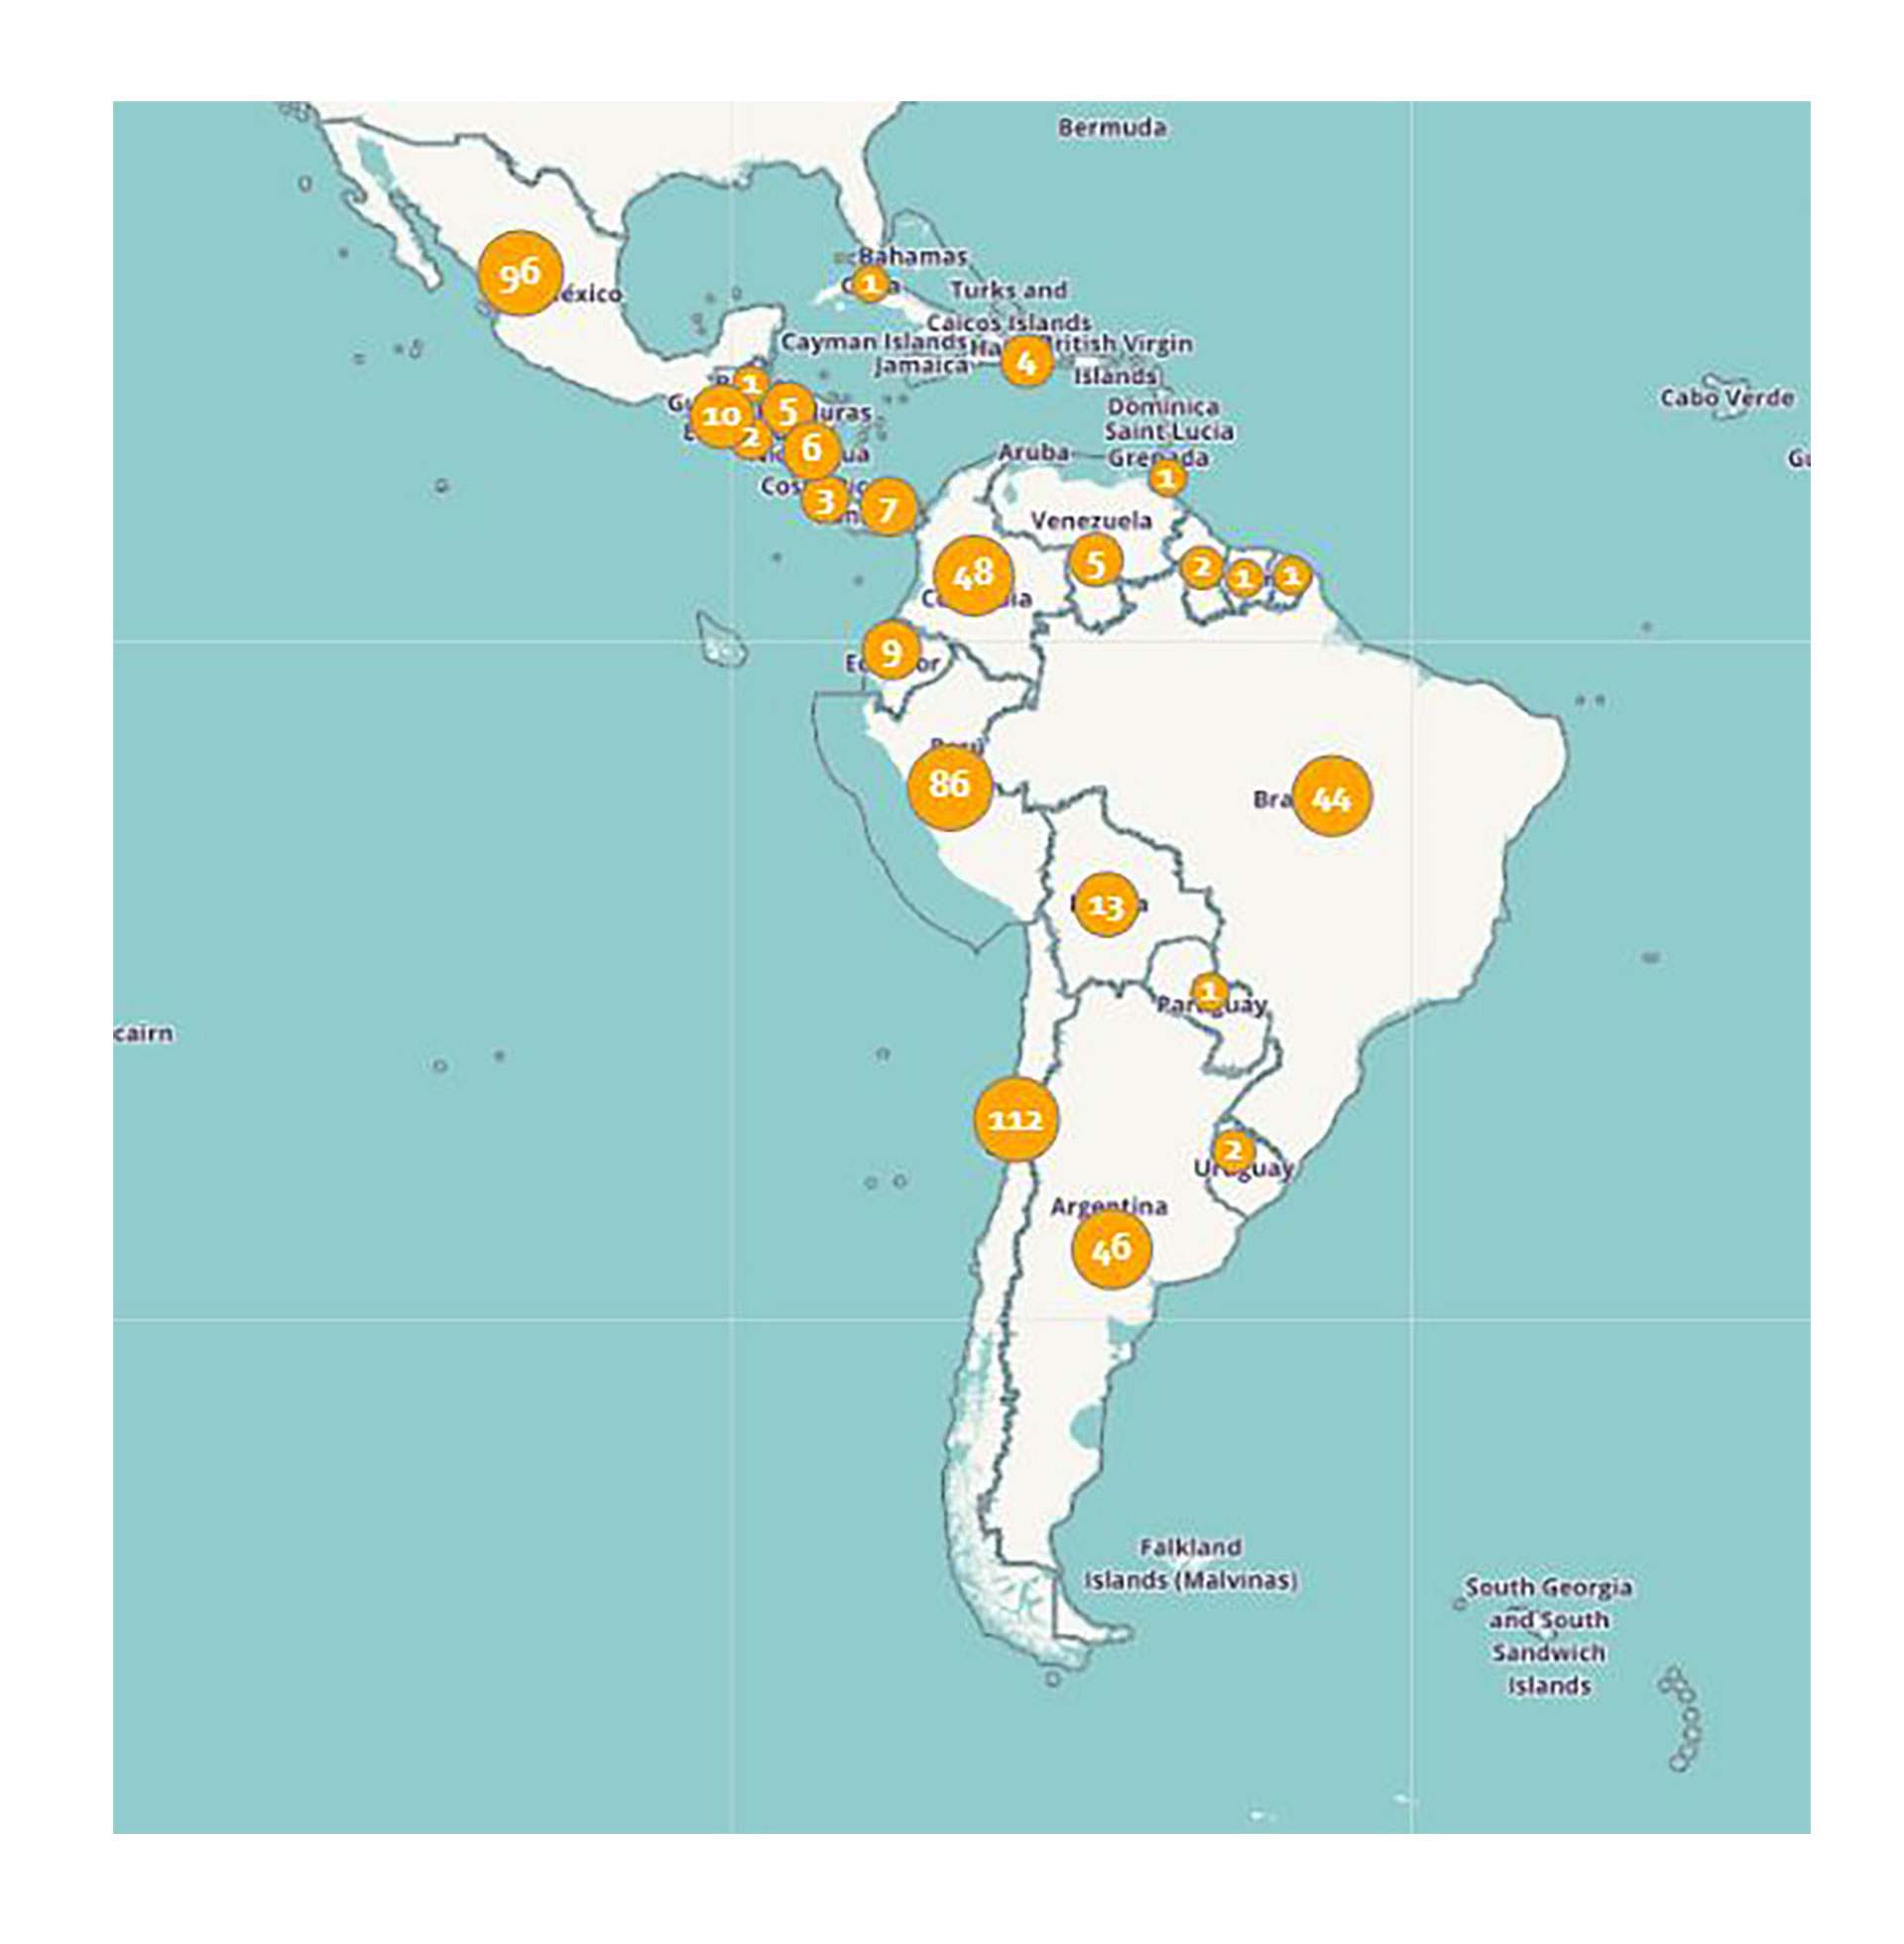 El paper cita un estudio sobre 301 proyectos mineros identificados en América Latina, de los cuales sitúa 46 en la Argentina